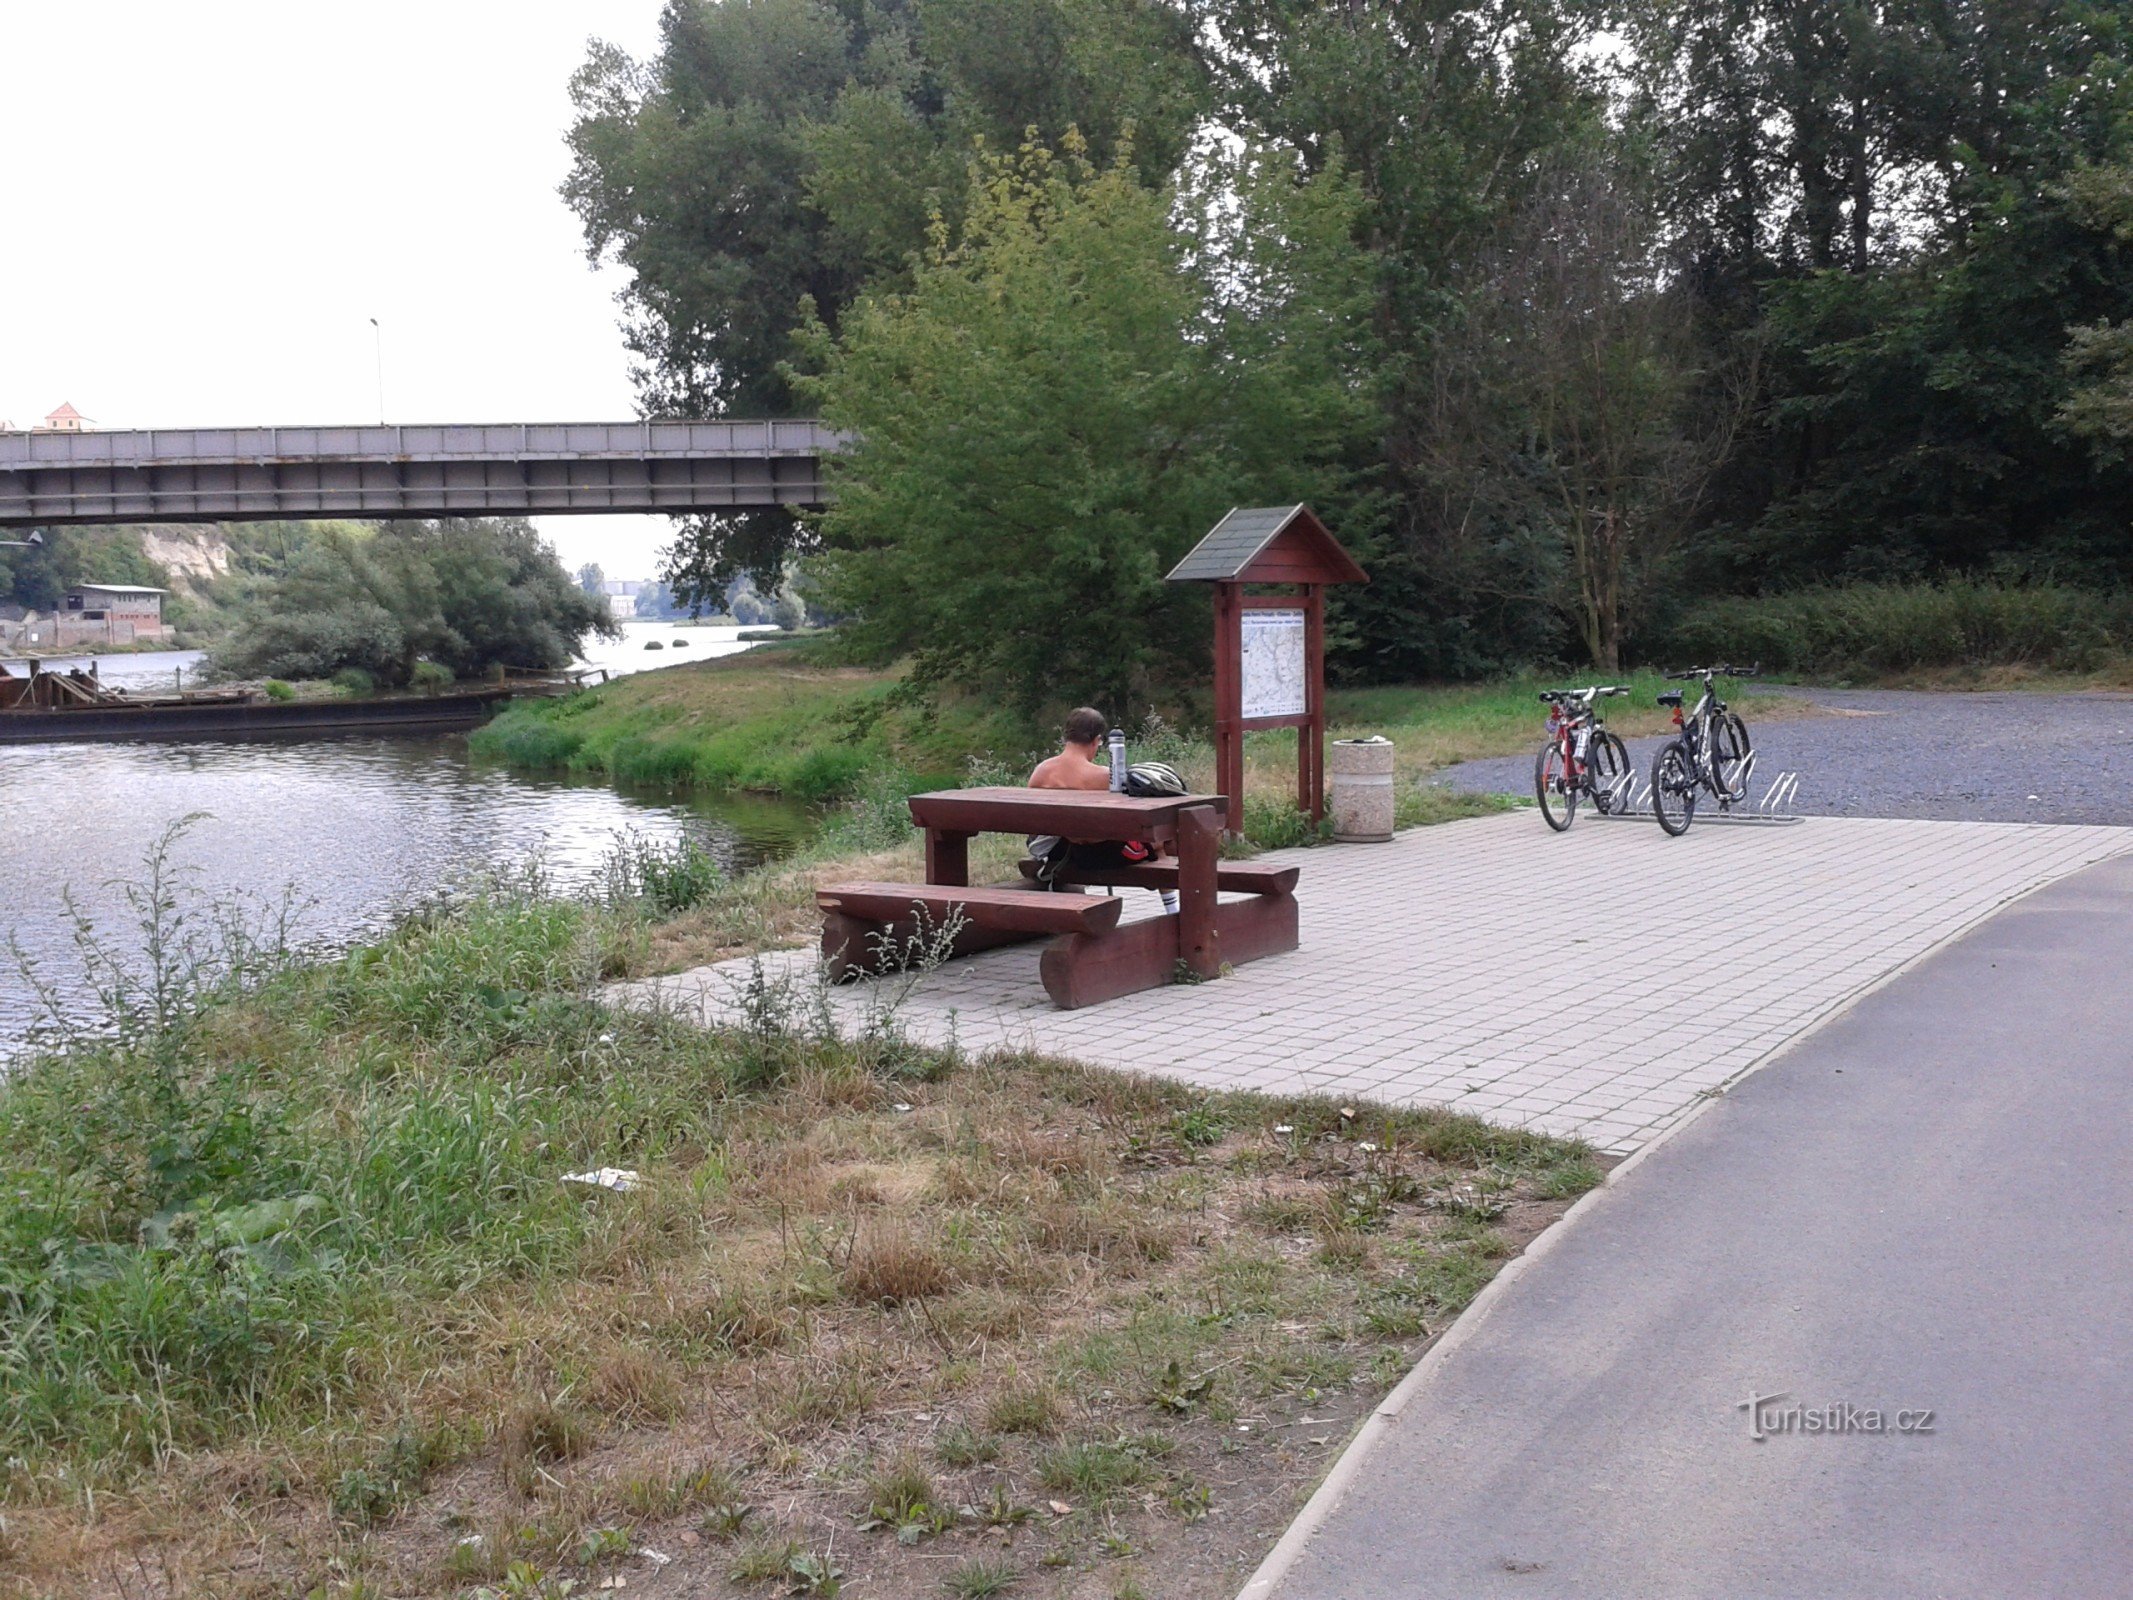 Passeio de bicicleta ao longo do Elba de Mělník a Stará Boleslav